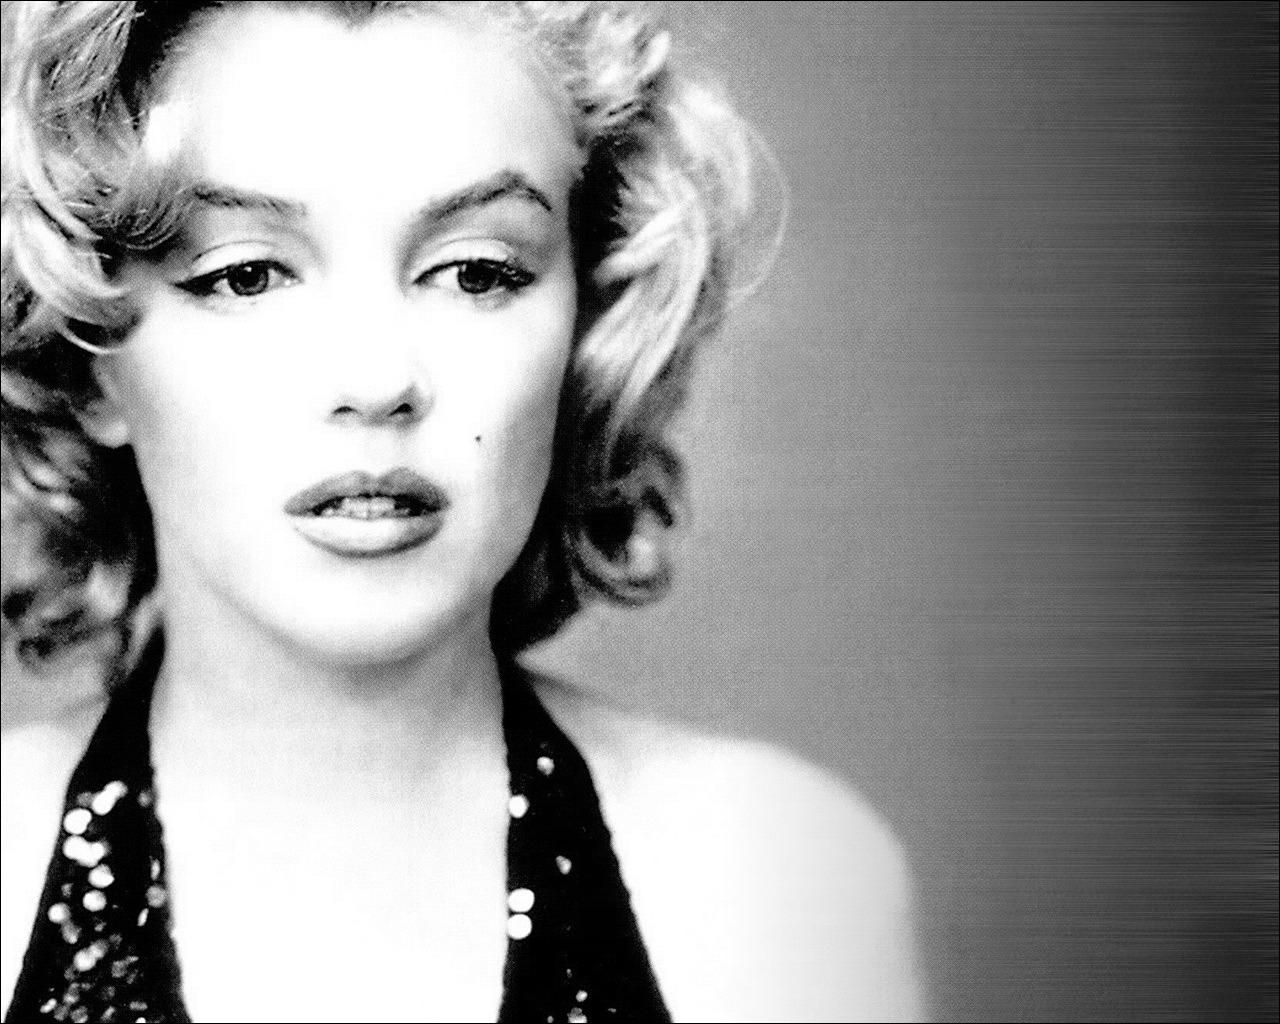 HD wallpaper, Marilyn, Monroe, Wallpaper